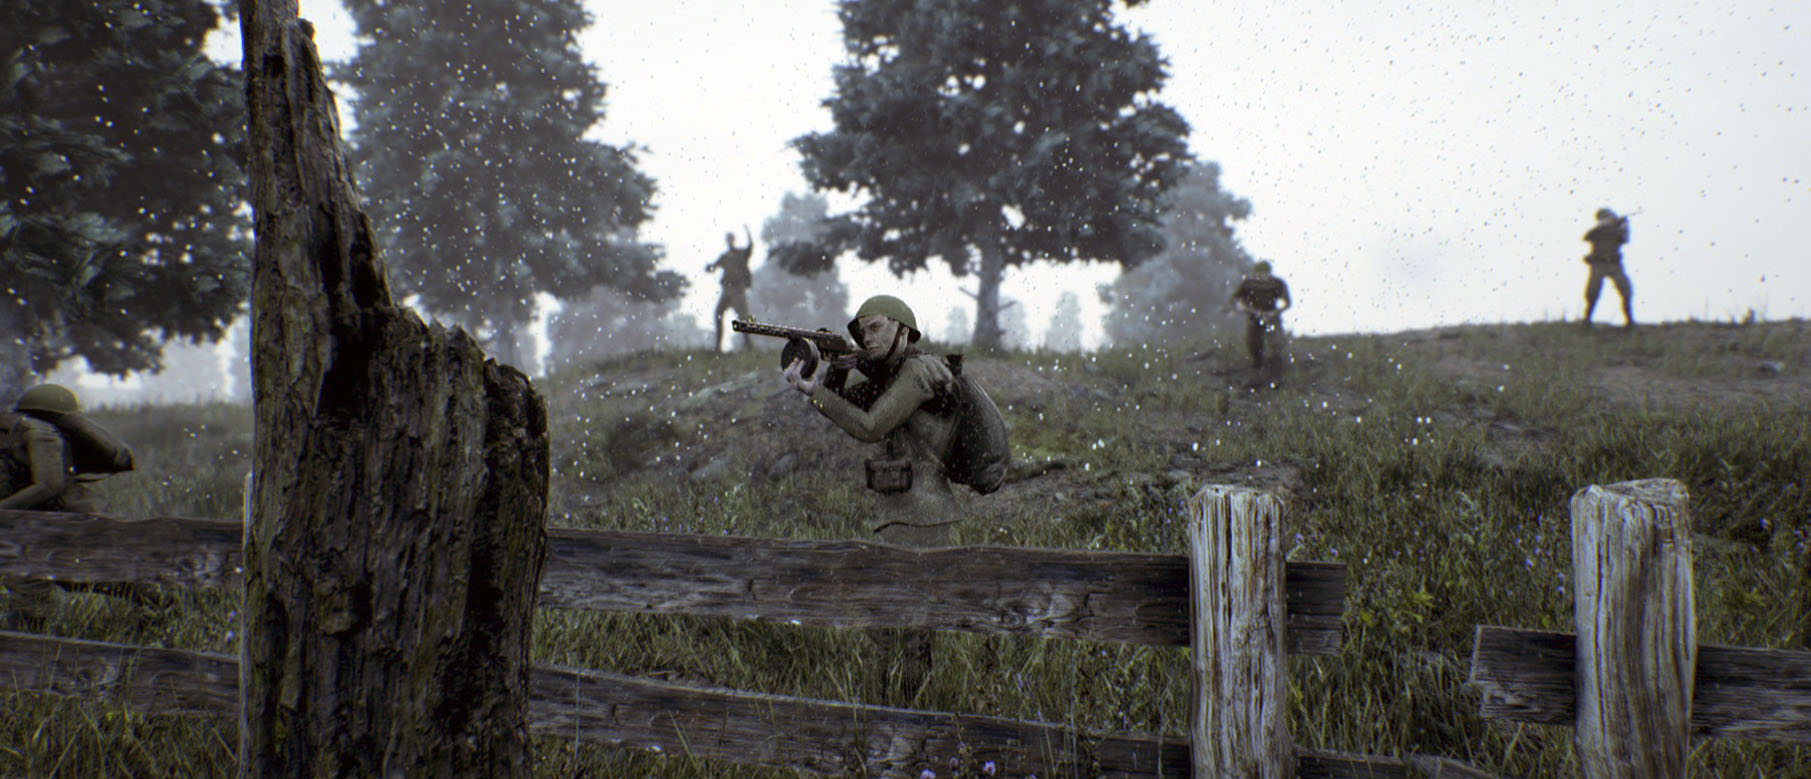 Изображение к Шутер от первого лица Battalion 1944 намерен бросить вызов Call of Duty и Battlefield, говорят разработчики